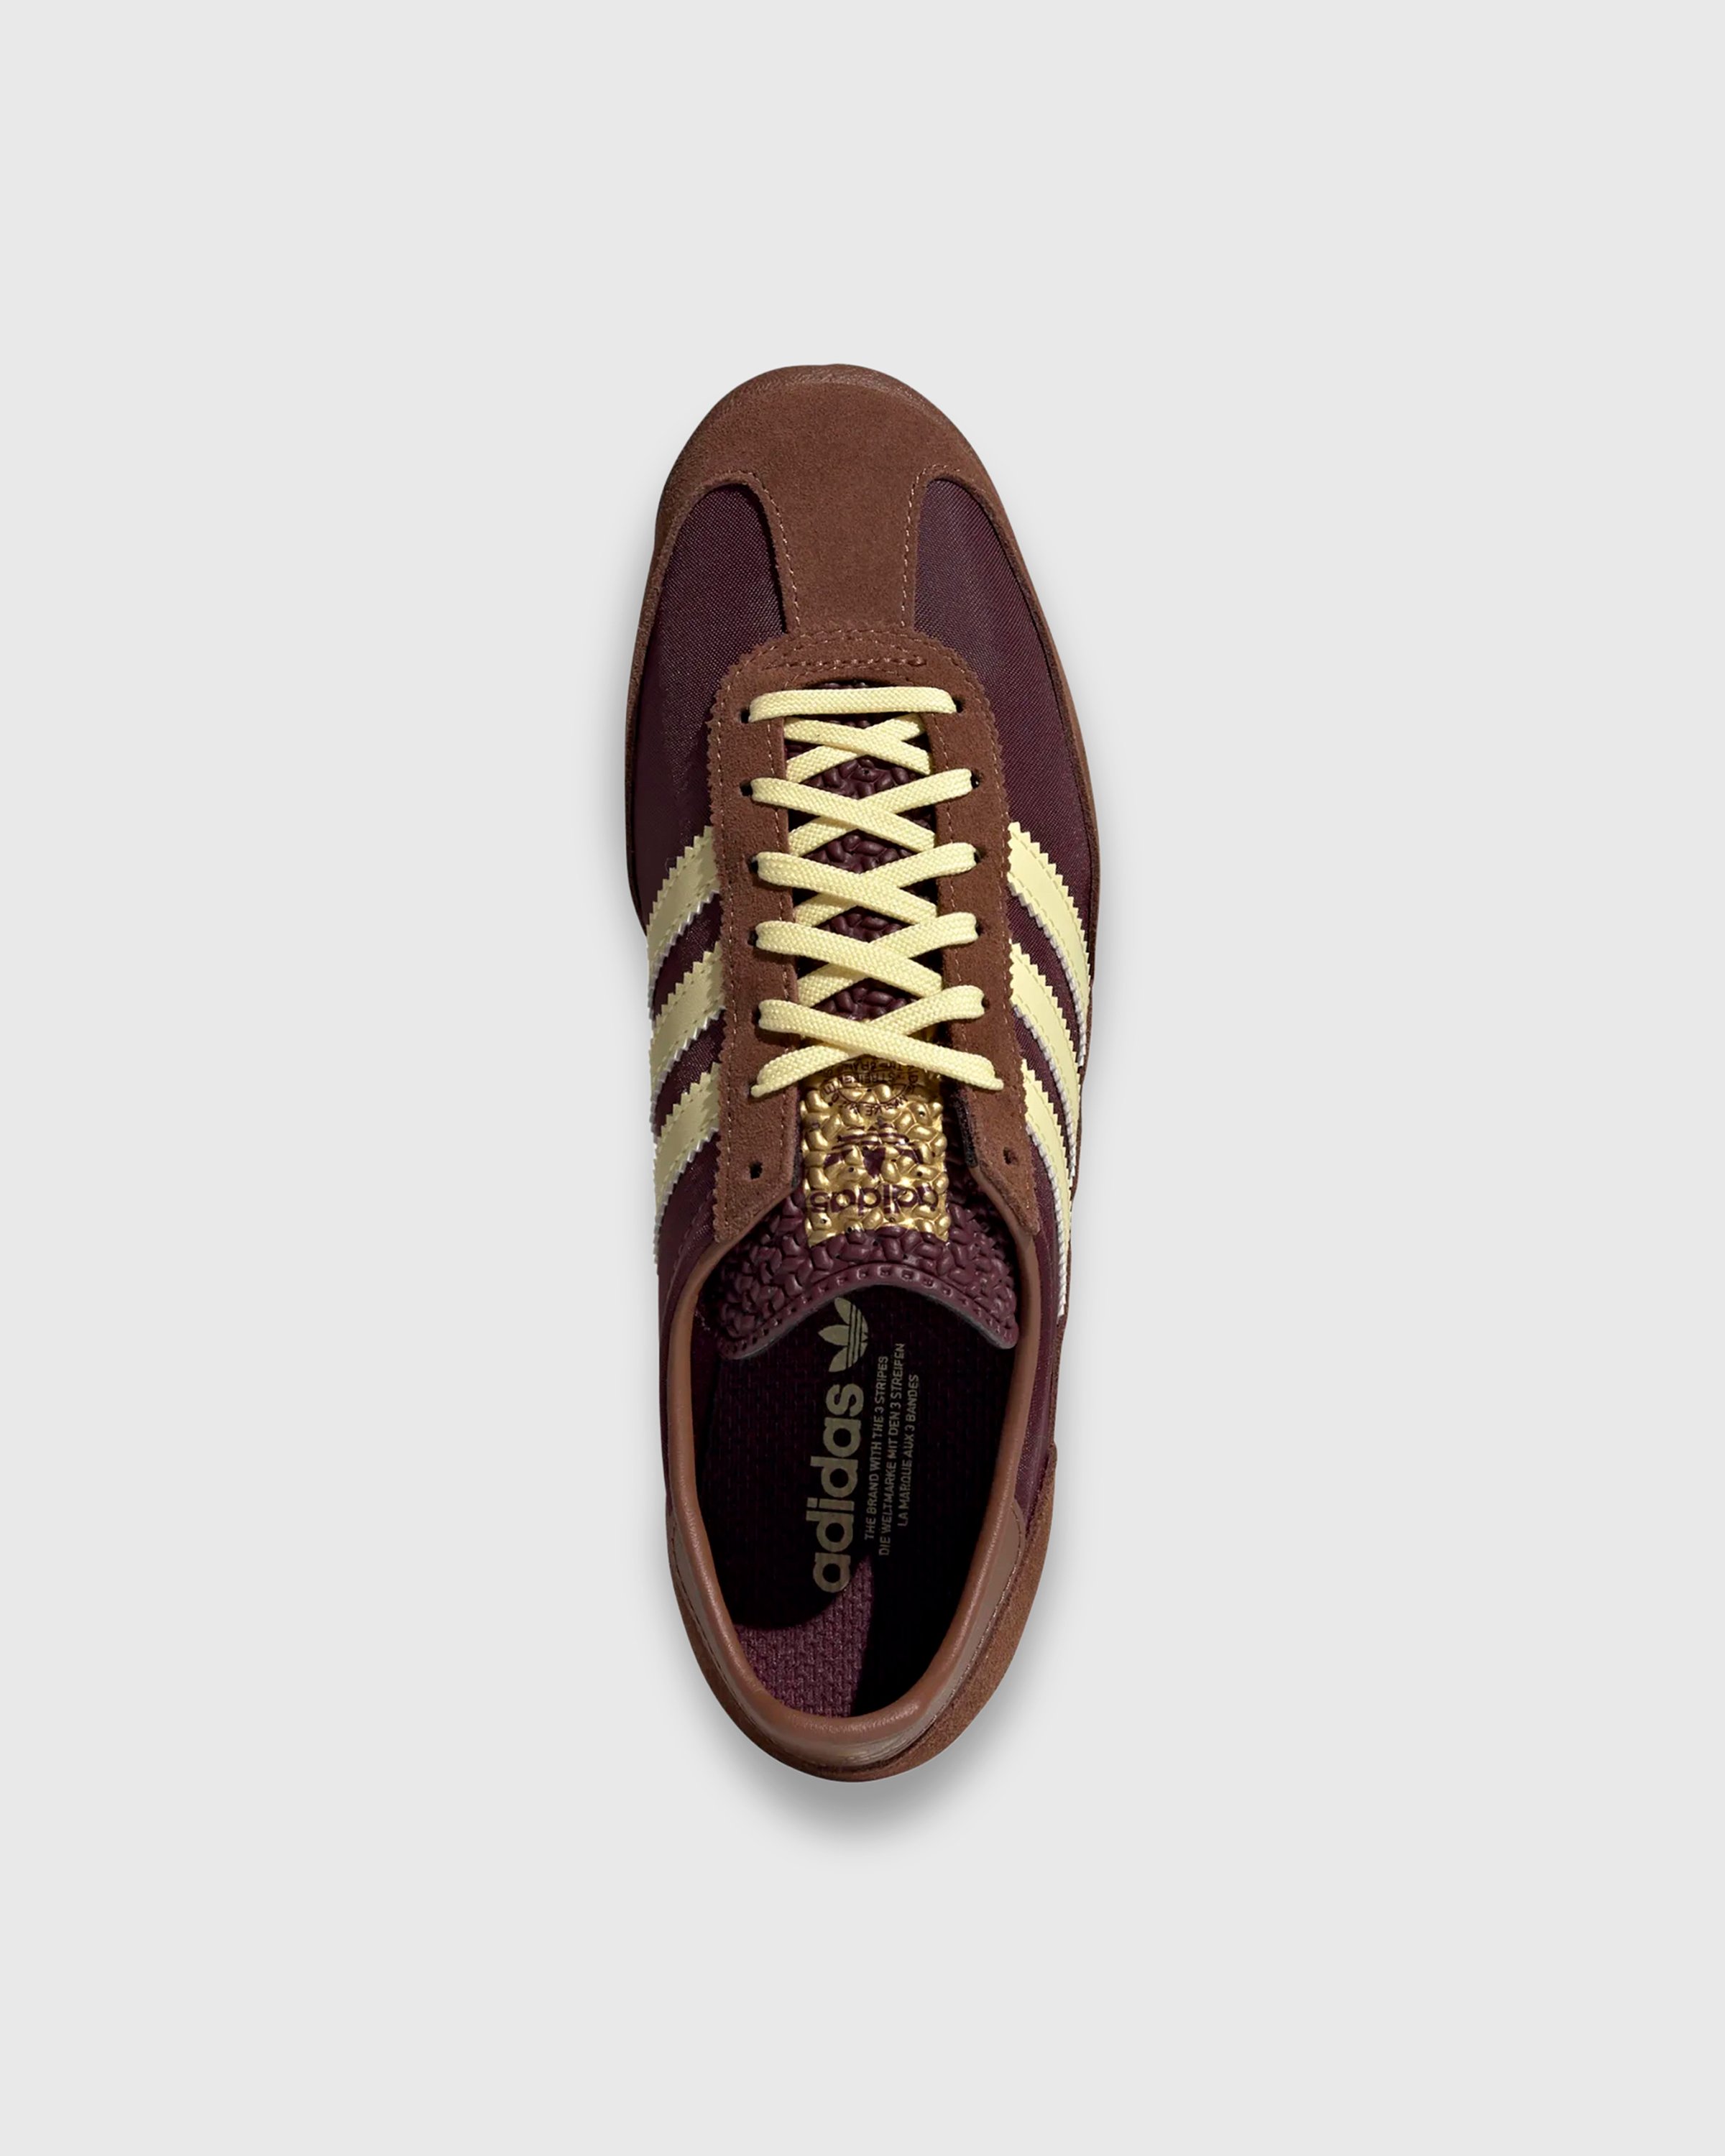 Adidas - SL 72 OG W          MAROON/ALMYEL/PREBRN - Footwear - Brown - Image 5